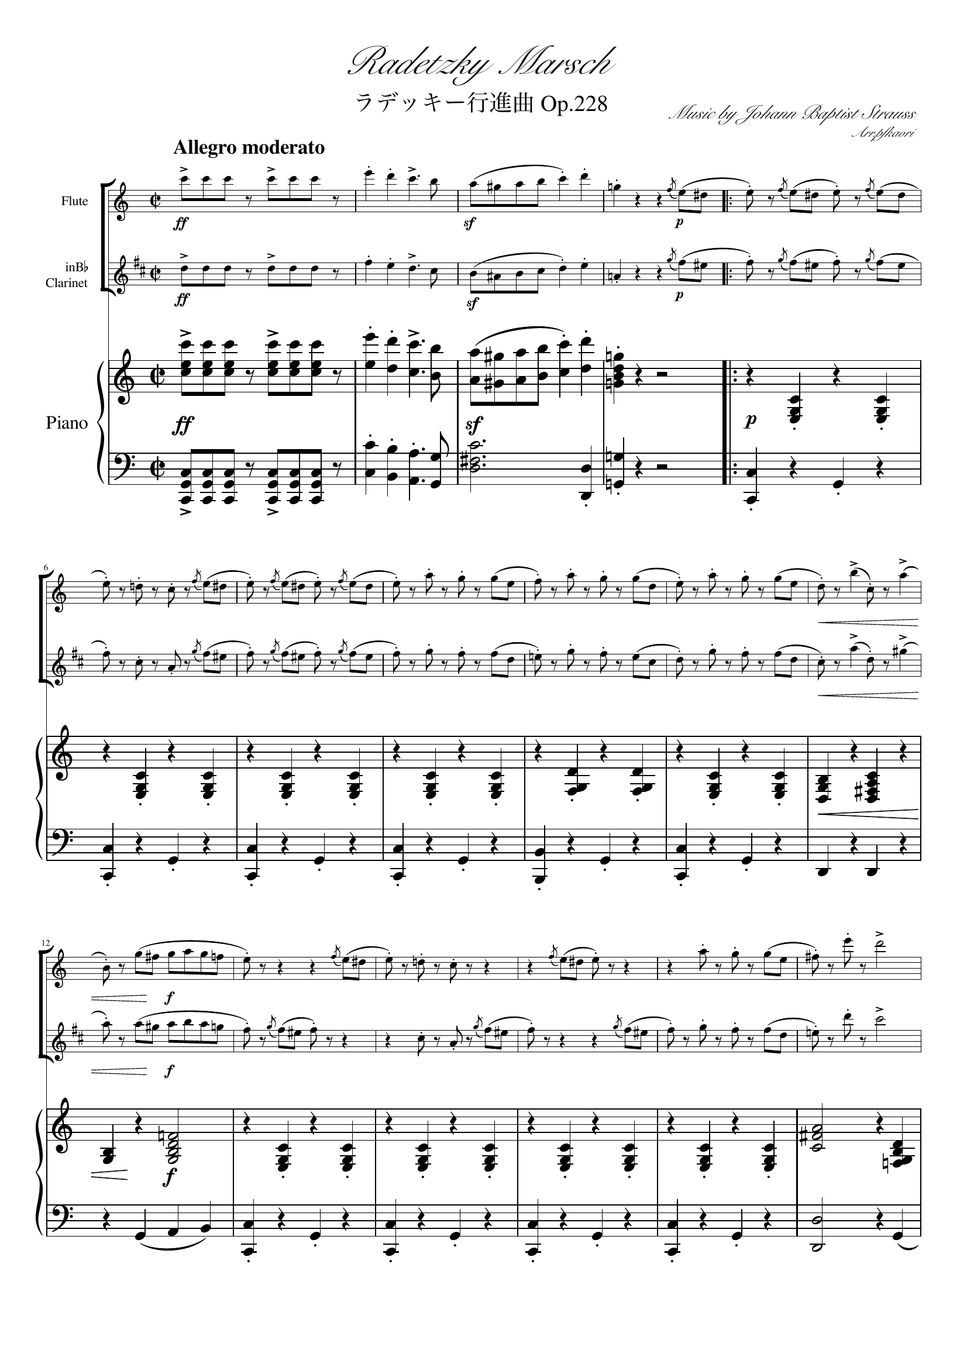 ヨハンシュトラウス1世 - ラデッキー行進曲 (C・ピアノトリオ/フルート&クラリネット) by pfkaori